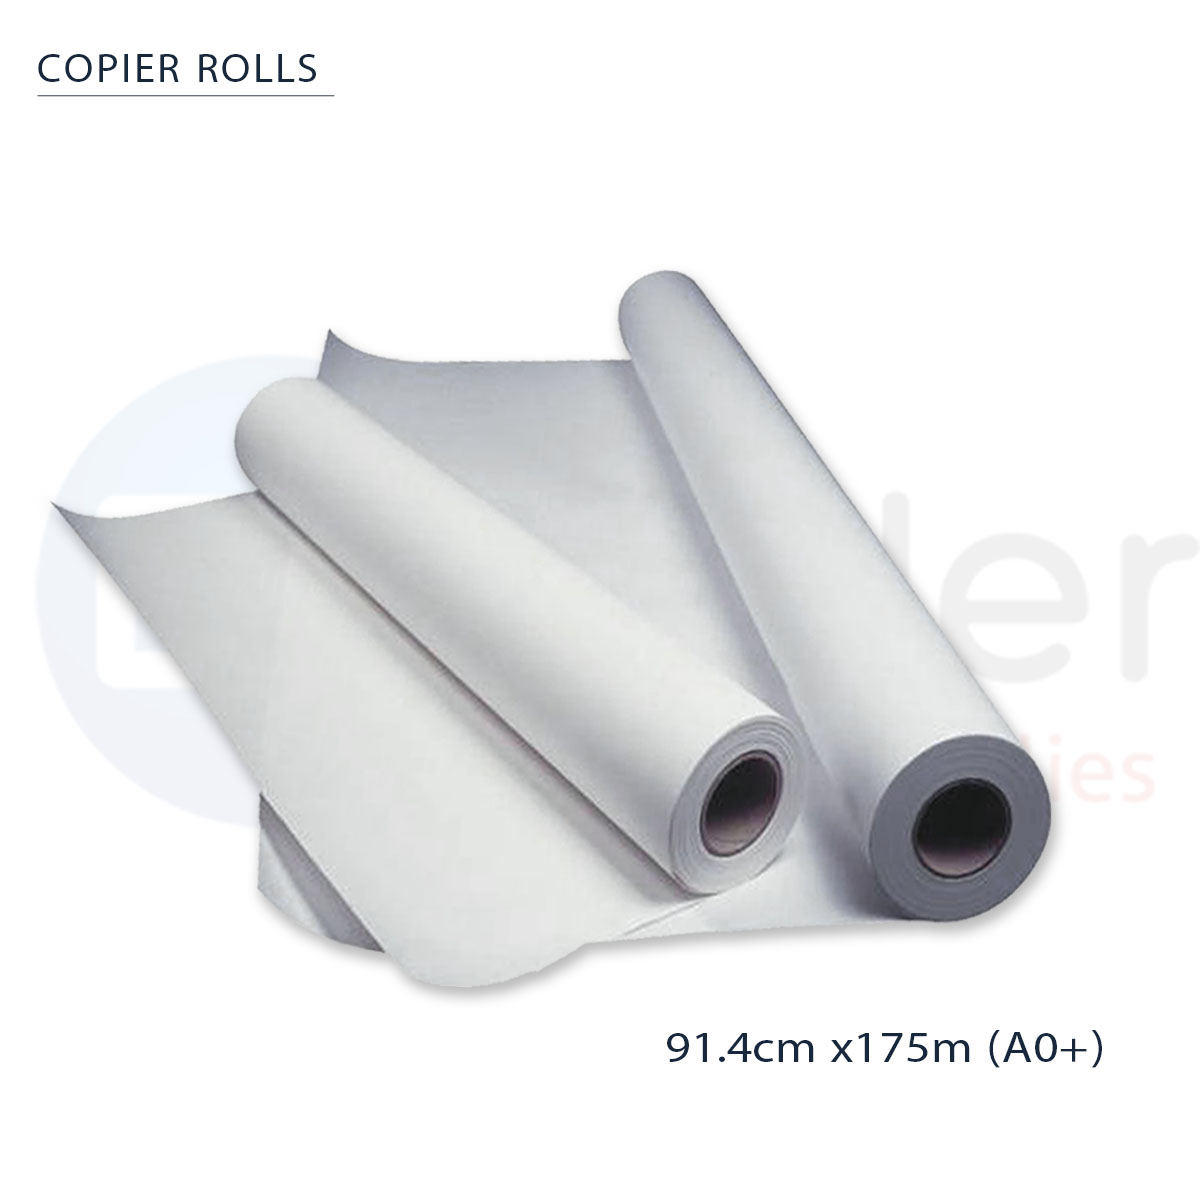 Copier roll 80gr. 91.4cmx175m, A0+,core-7.5cm, KANGAS